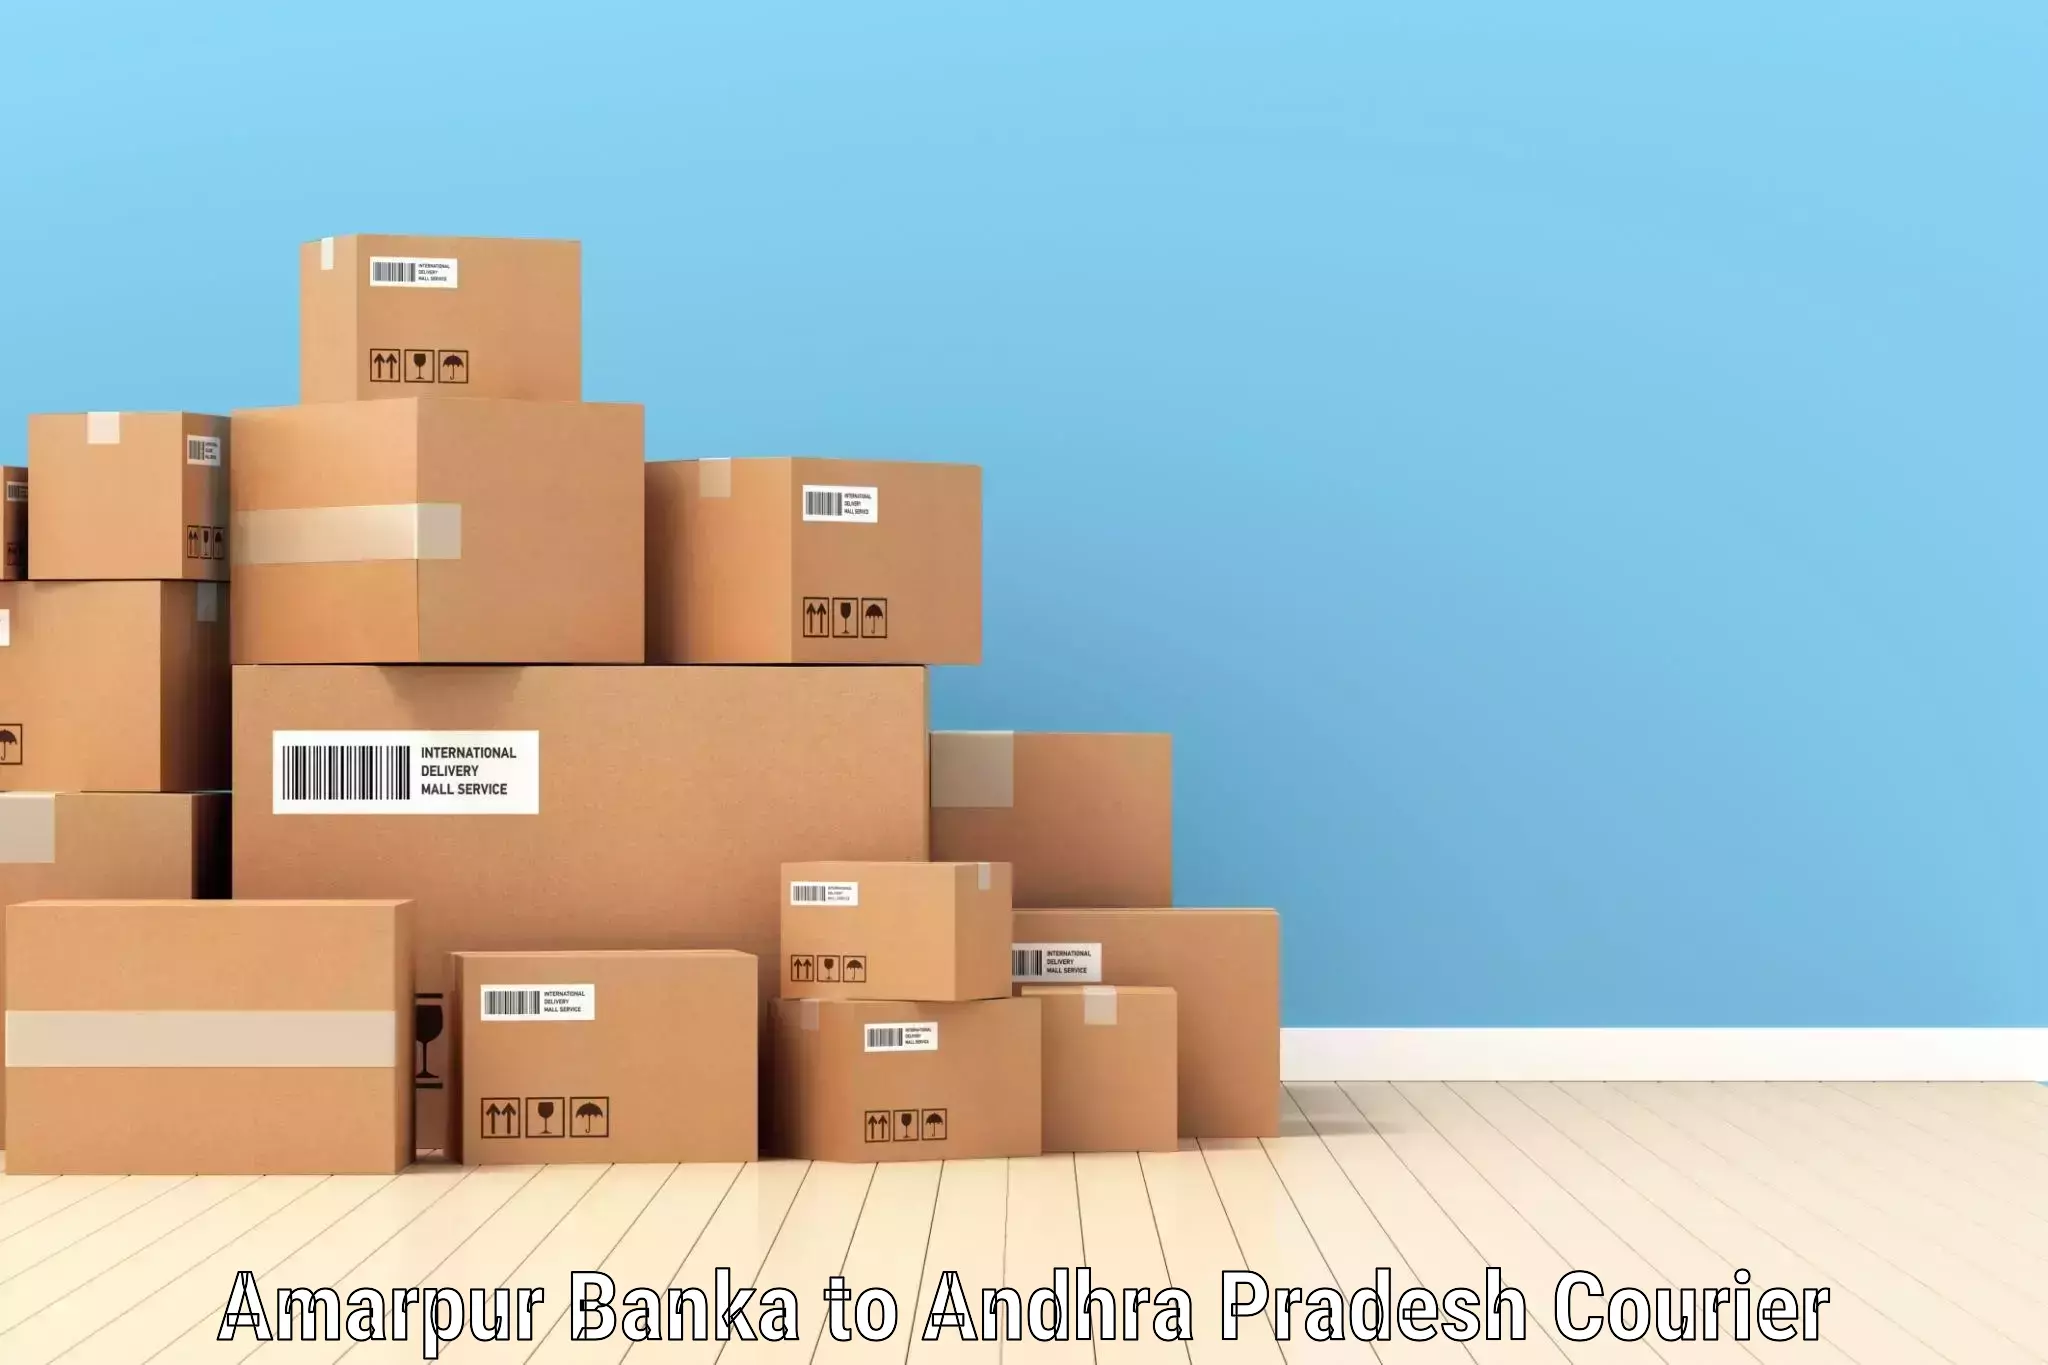 Affordable parcel service Amarpur Banka to Gudivada